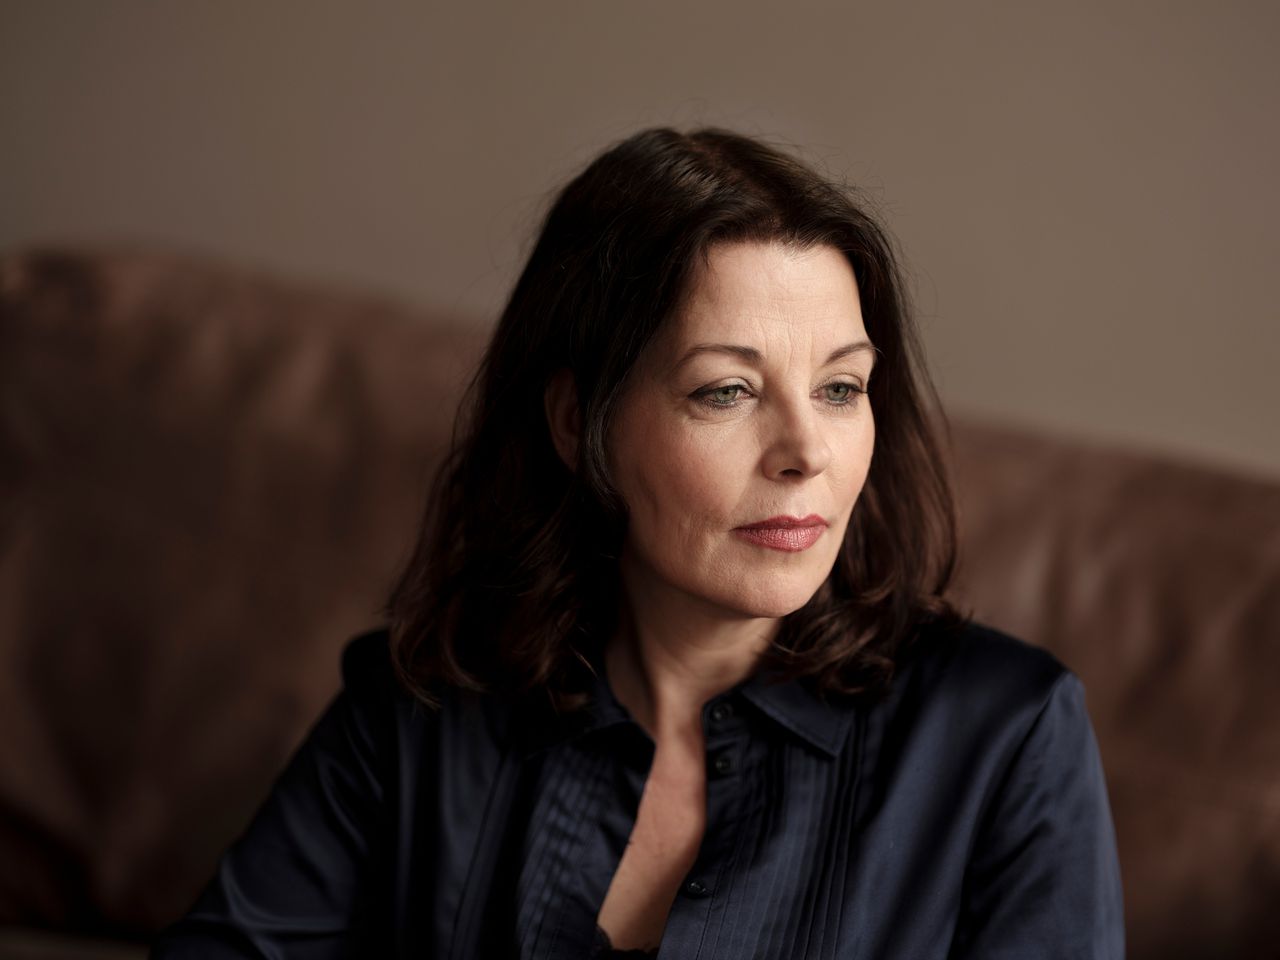 Manon Uphoff is een van de drie vrouwelijke auteurs op de Libris-short list van zes.